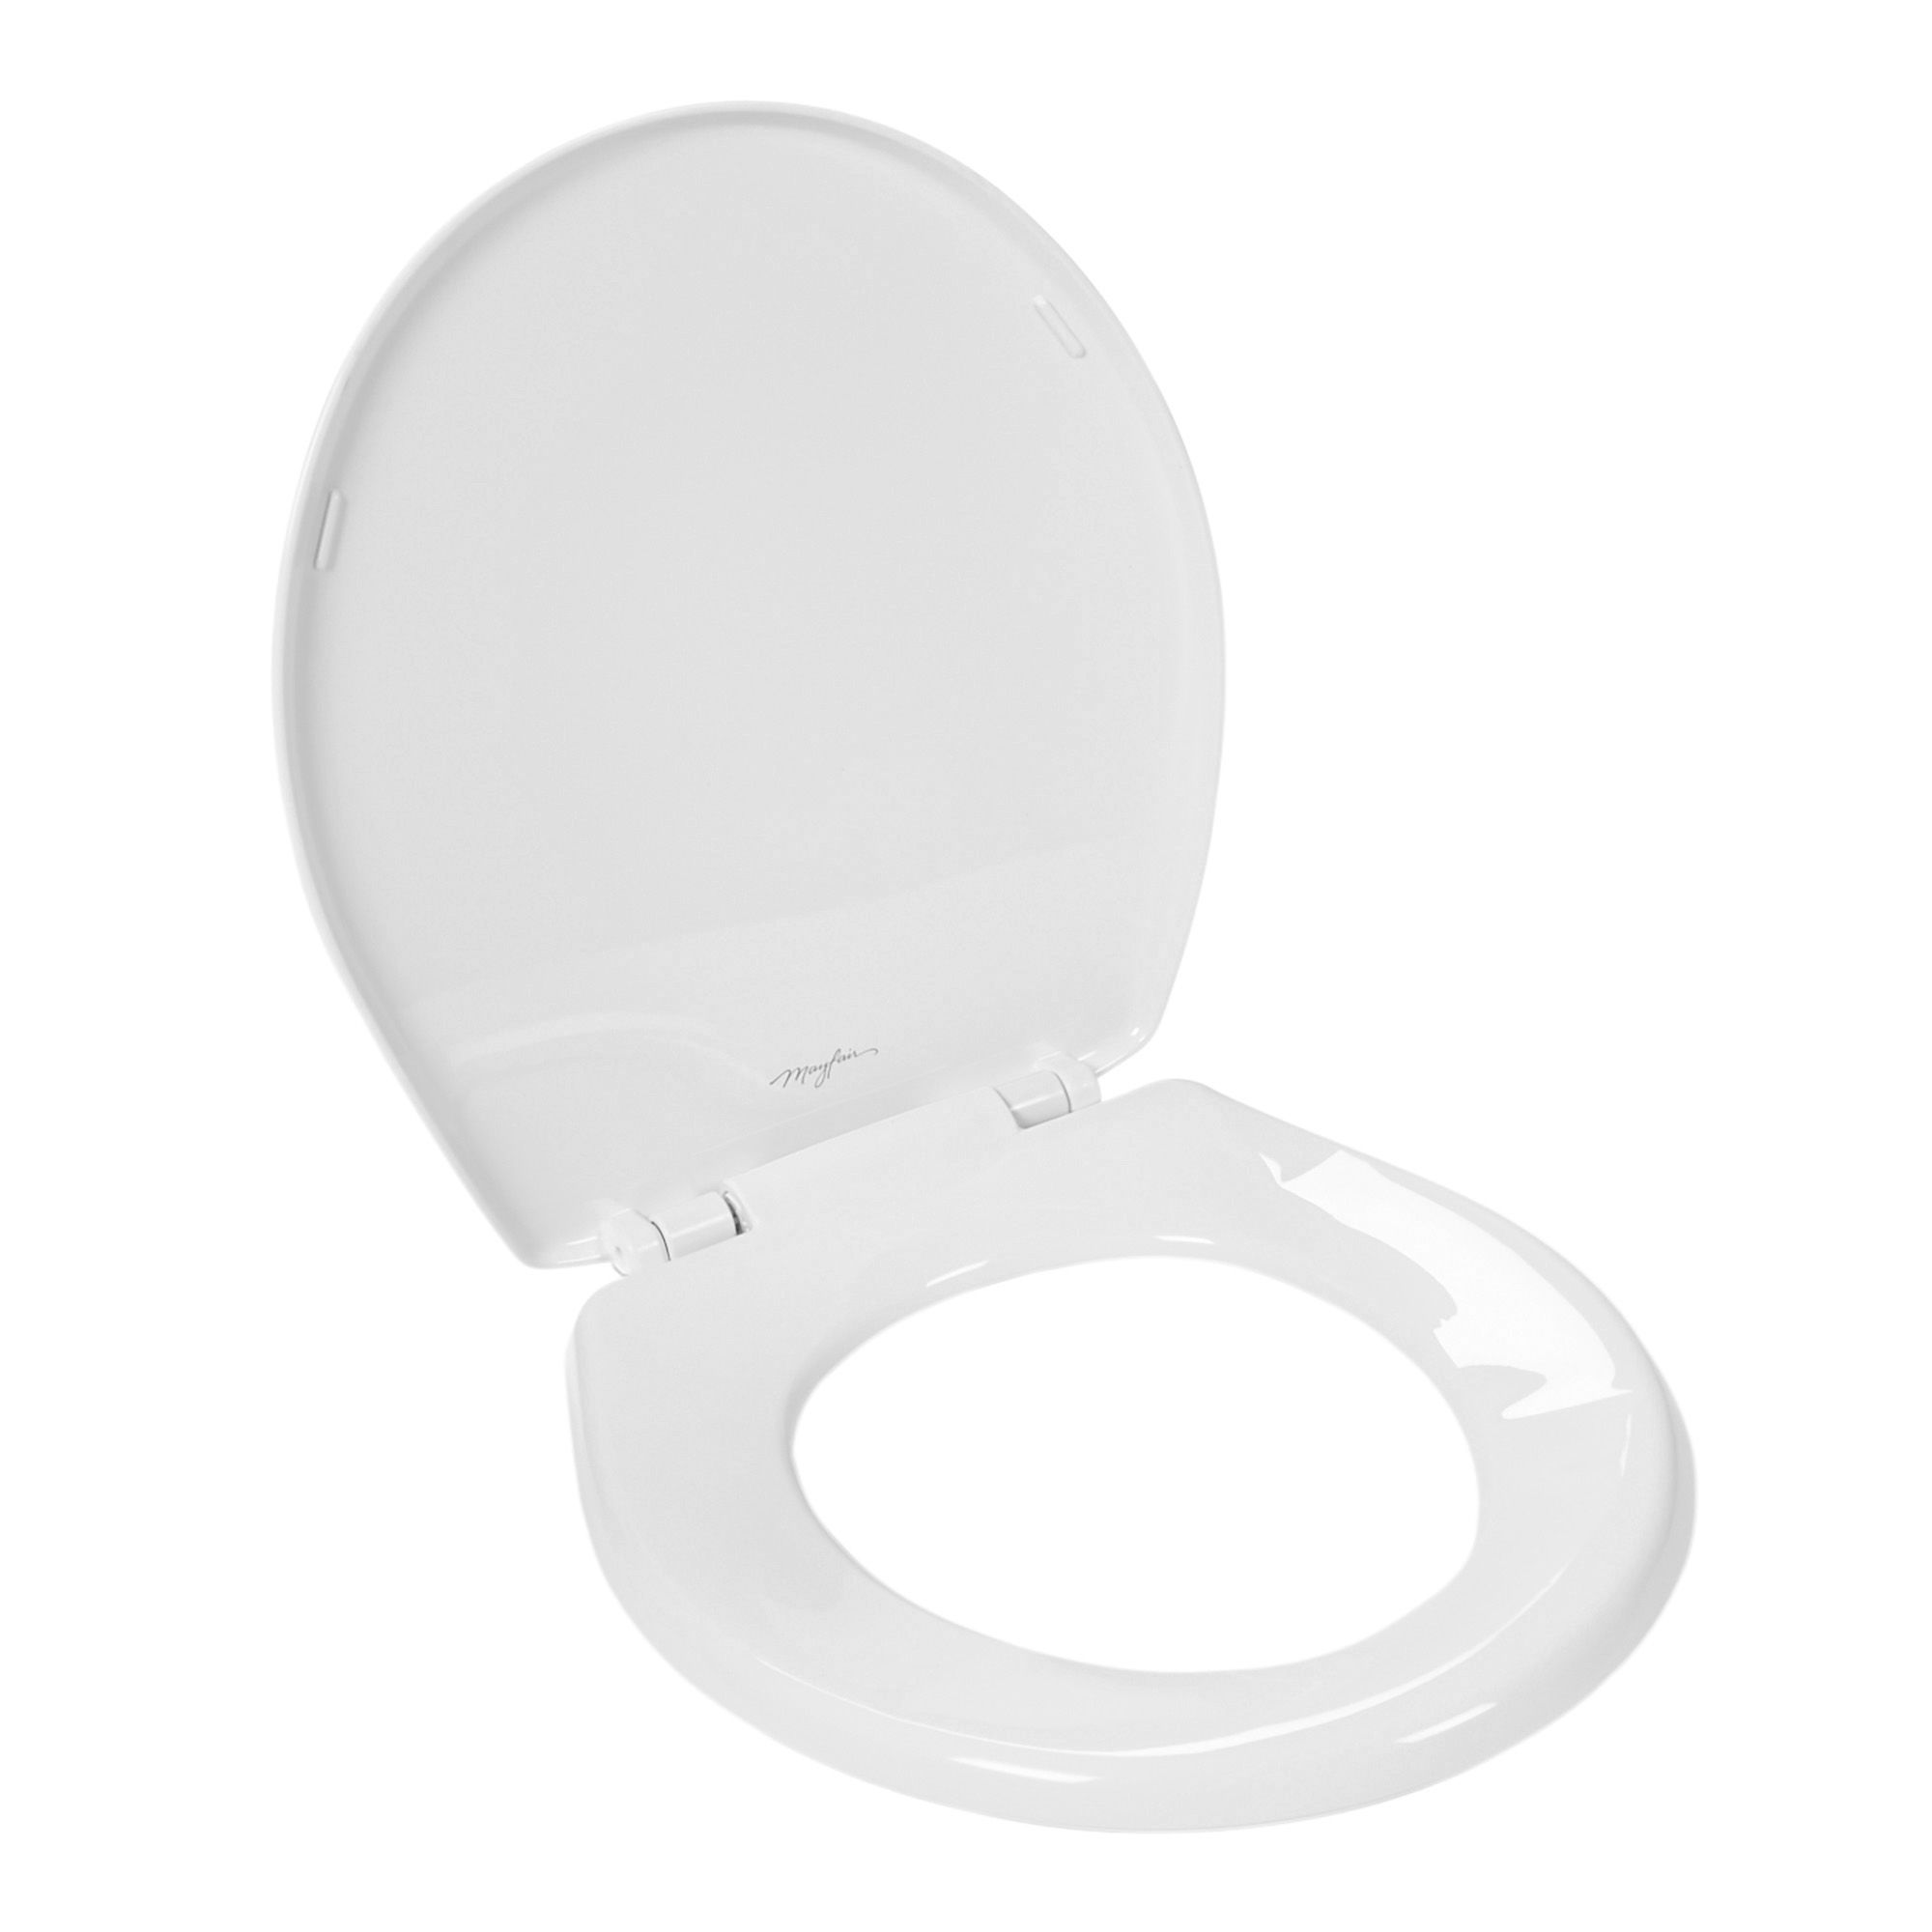 Taille standard en plastique blanc siège de toilette Raccord Salle de Bain Sièges WC 